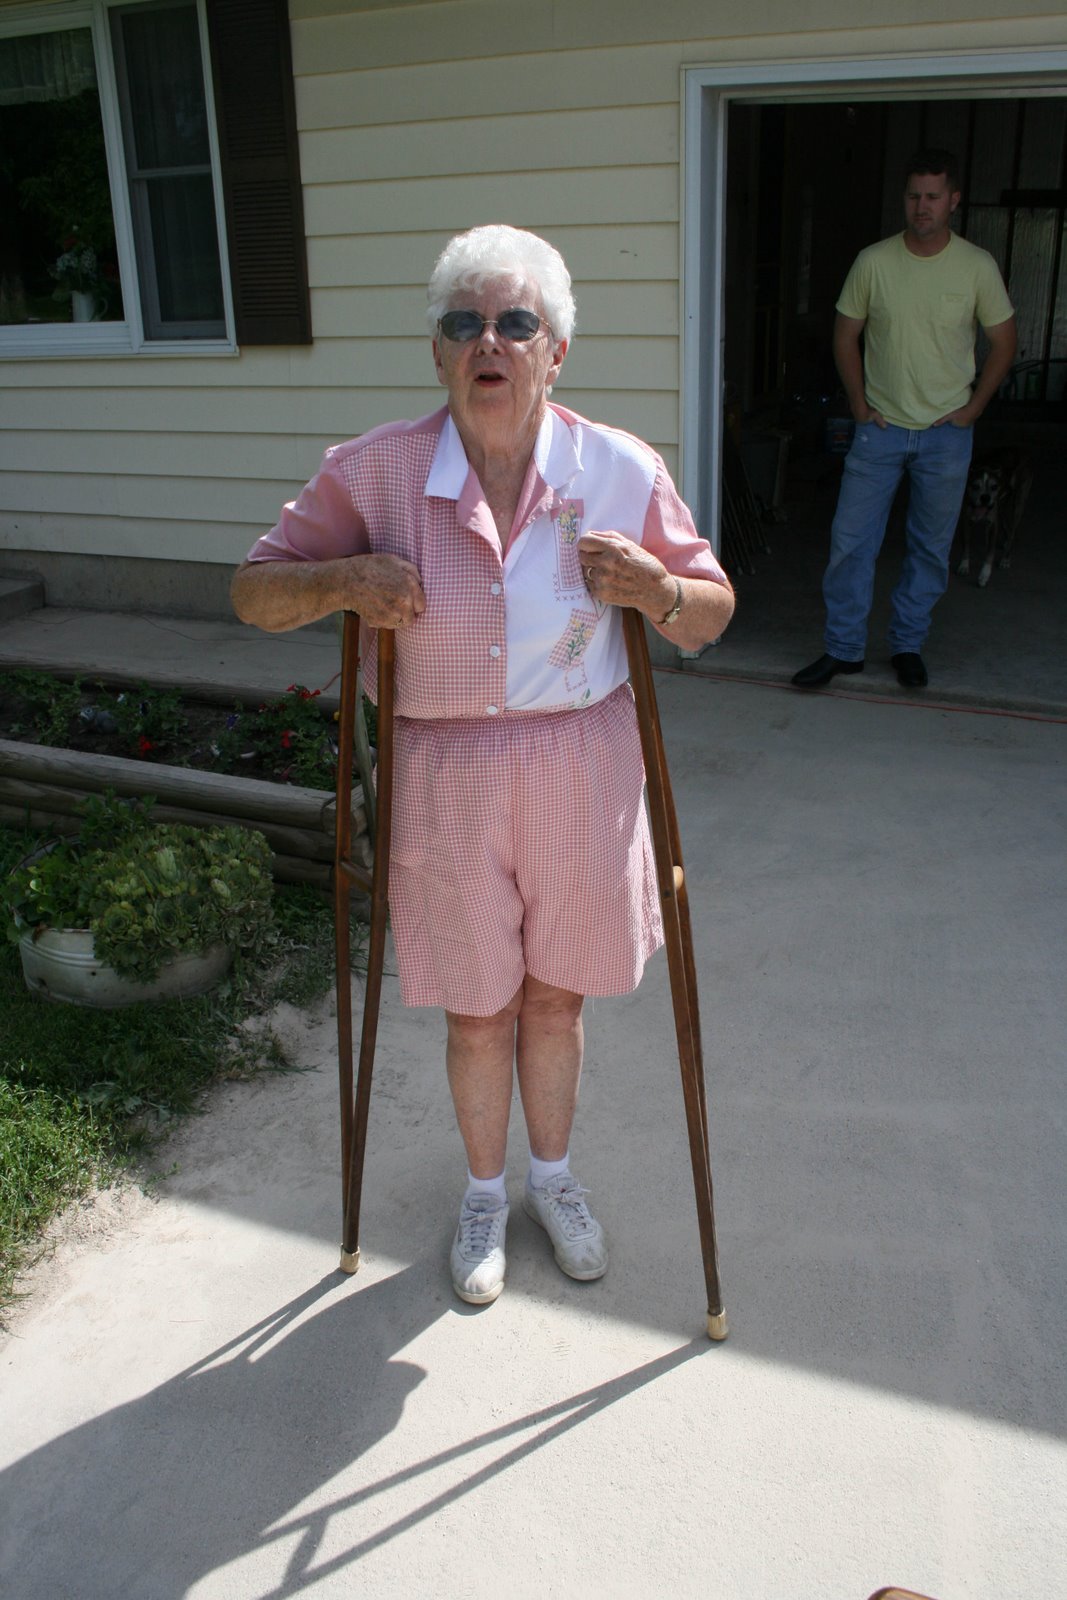 [grandma+modeling+crutches.jpg]